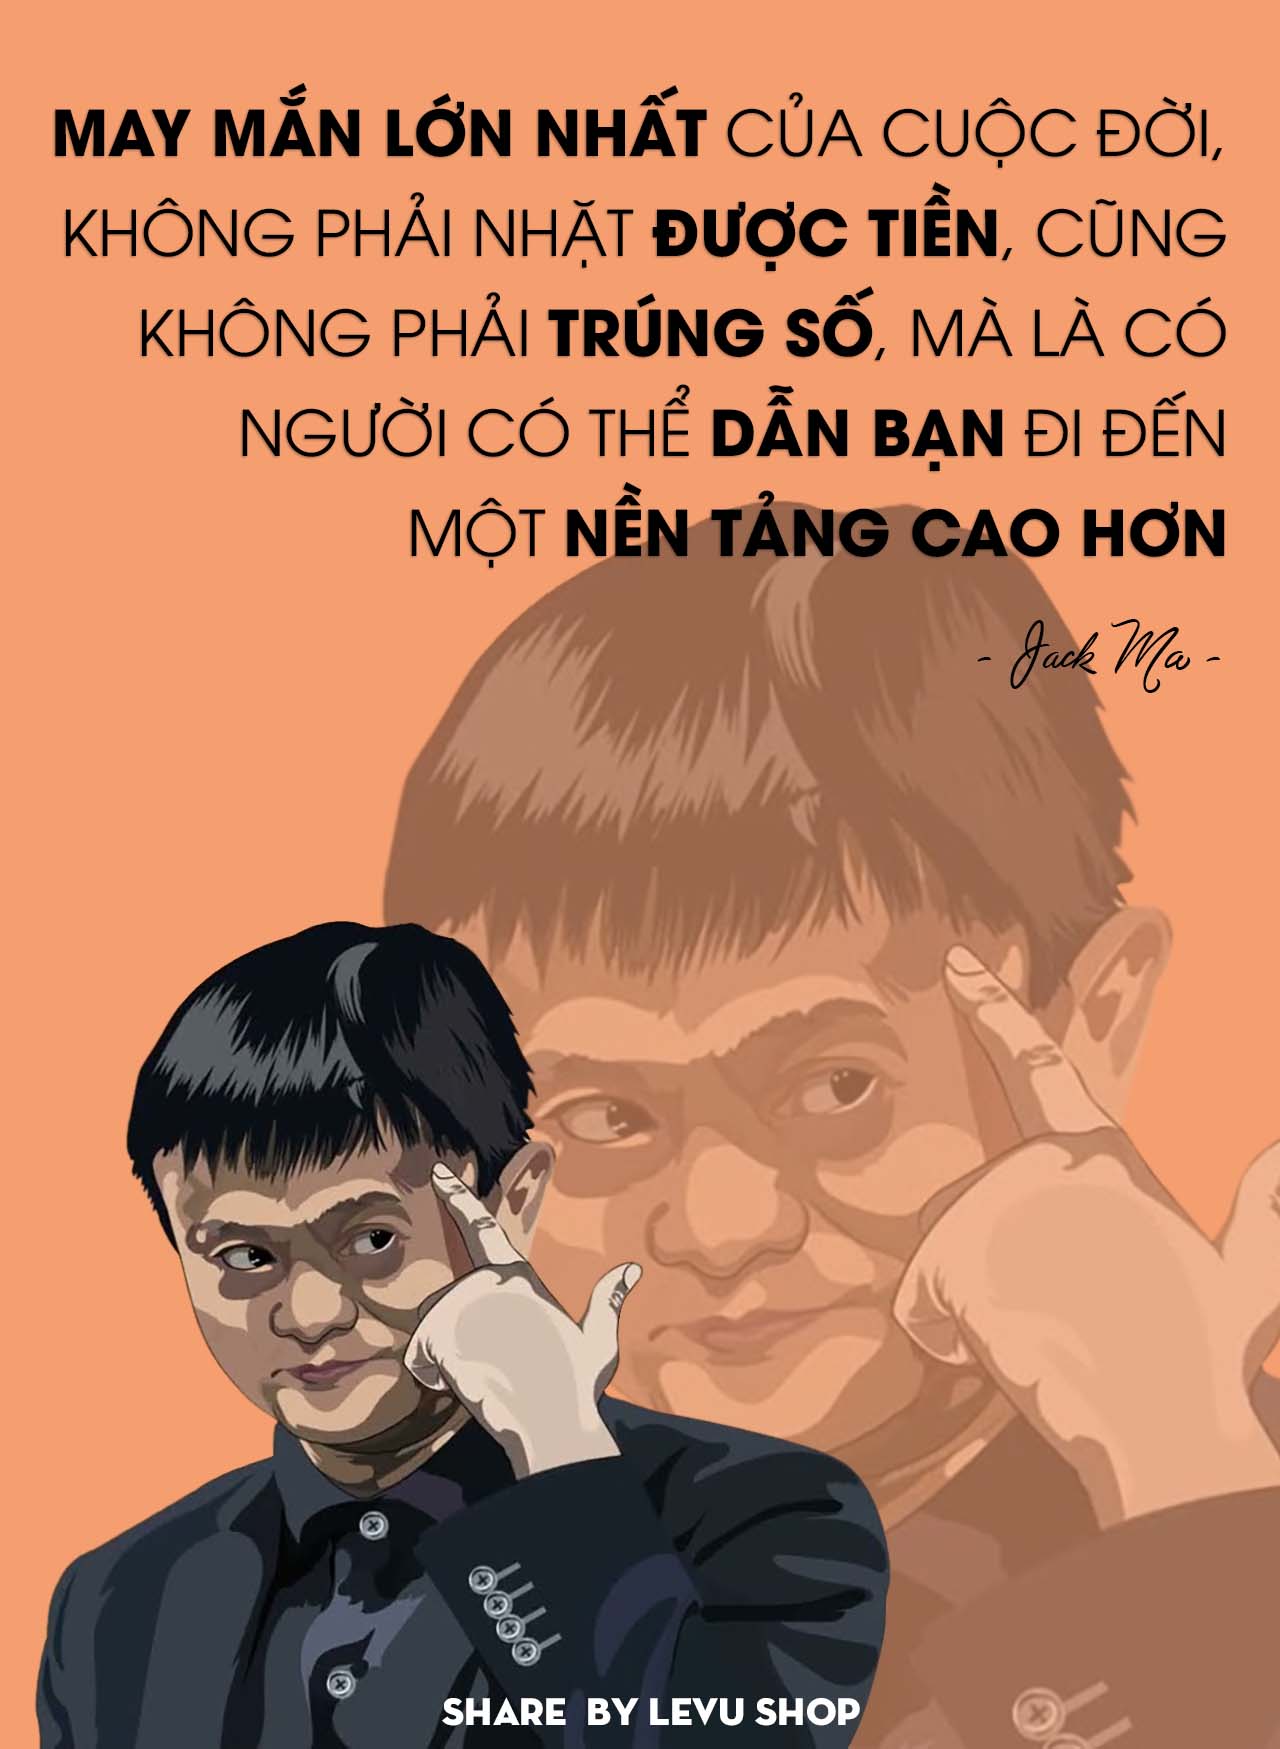 Trọn bộ những câu nói hay của Jack Ma thúc đẩy thành công